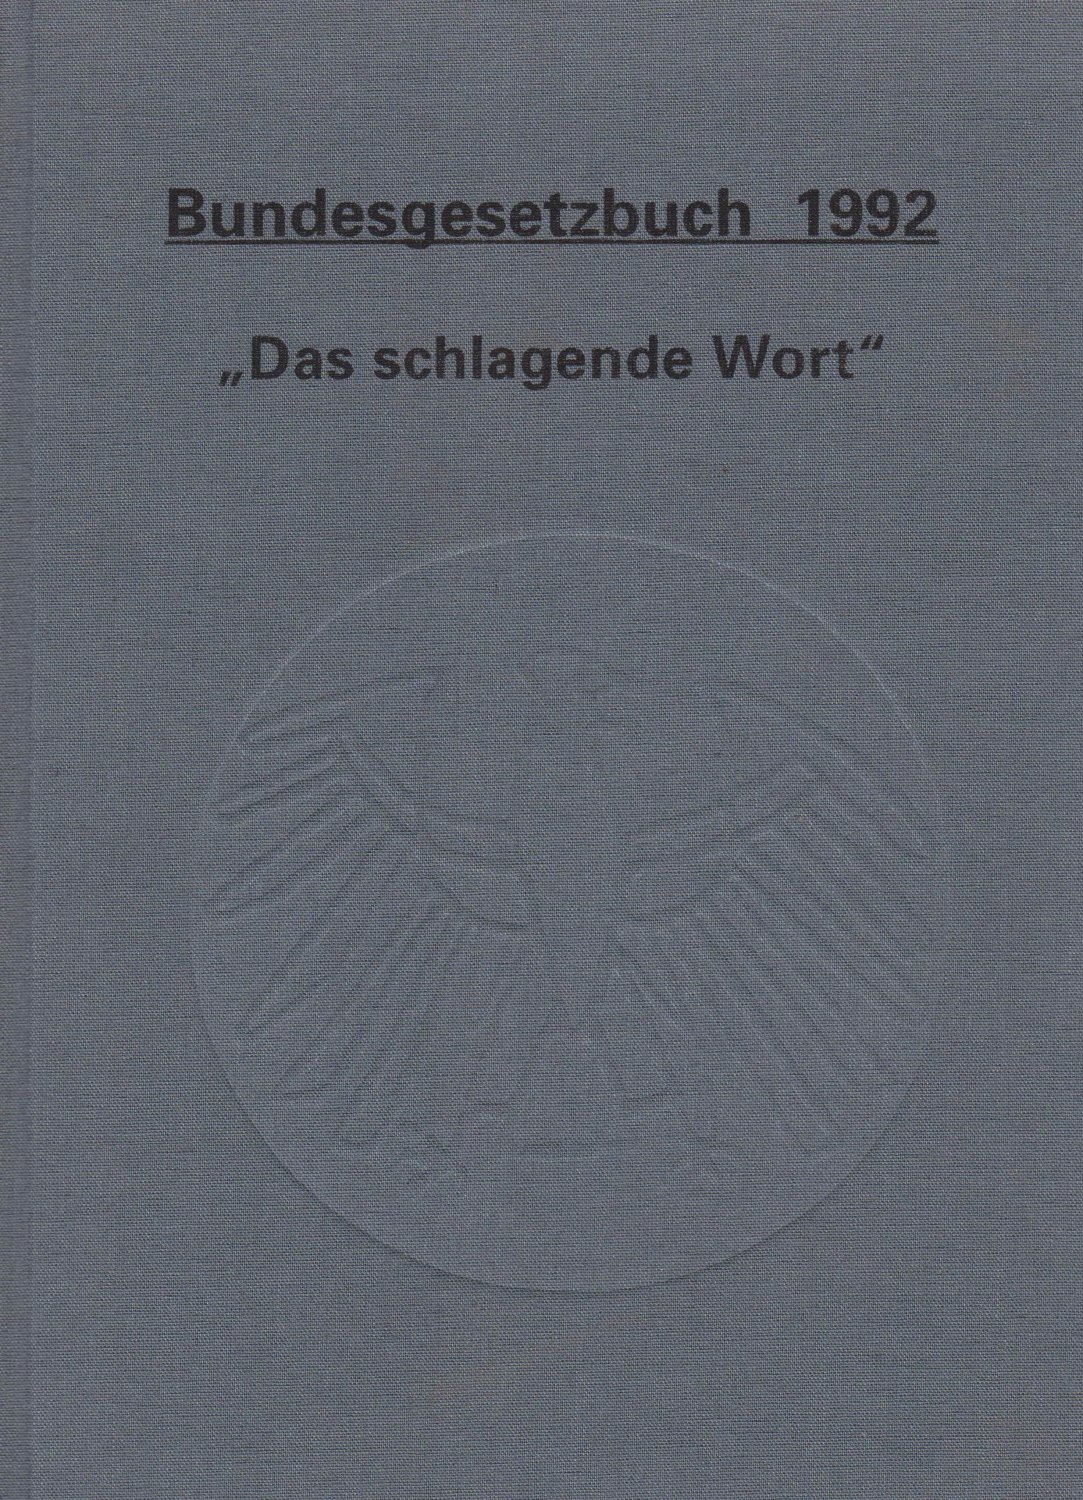 SCHWARZ, Jana / Martin KIRST / Johannes ECKARDT:  Bundesgesetzbuch 1992. "Das schlagende Wort". 